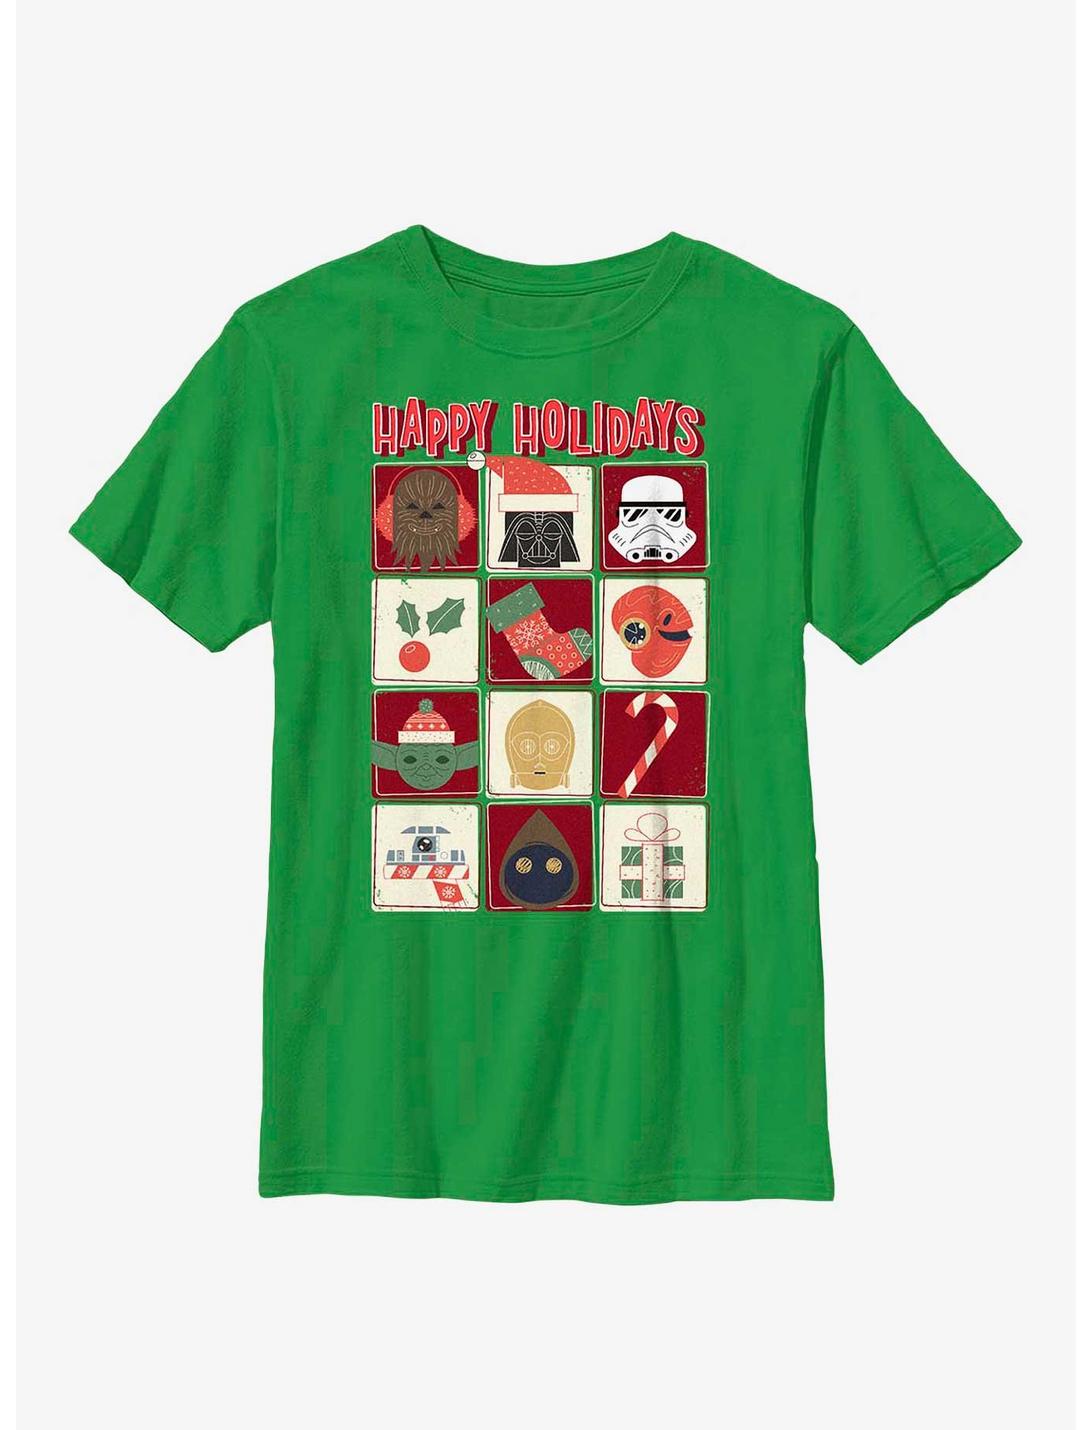 Star Wars Holiday Icons Youth T-Shirt, KELLY, hi-res